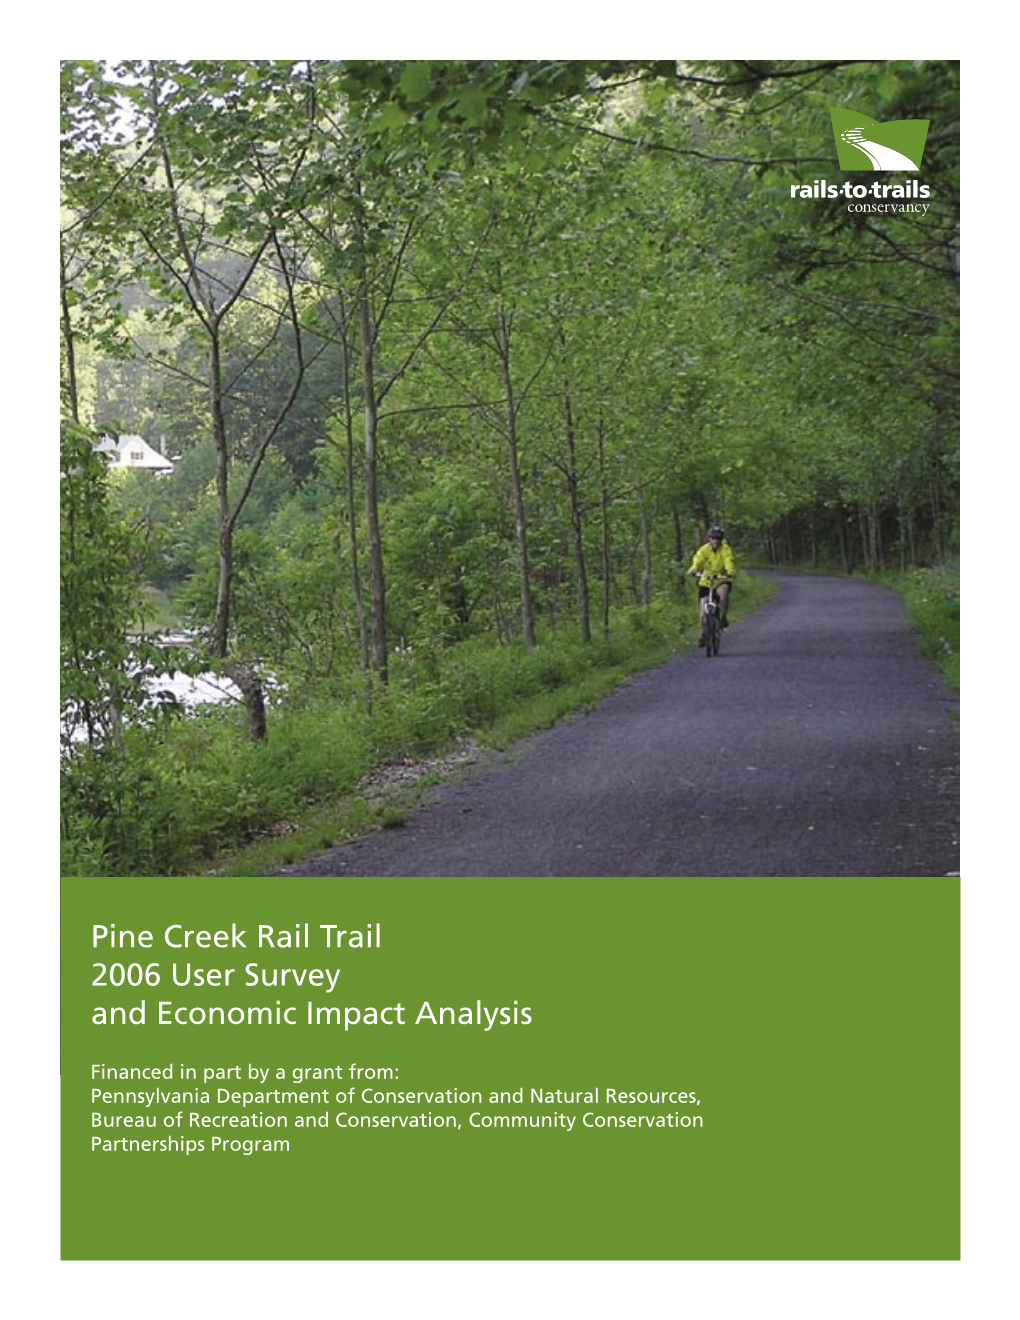 Pine Creek Rail Trail – Economic Impact